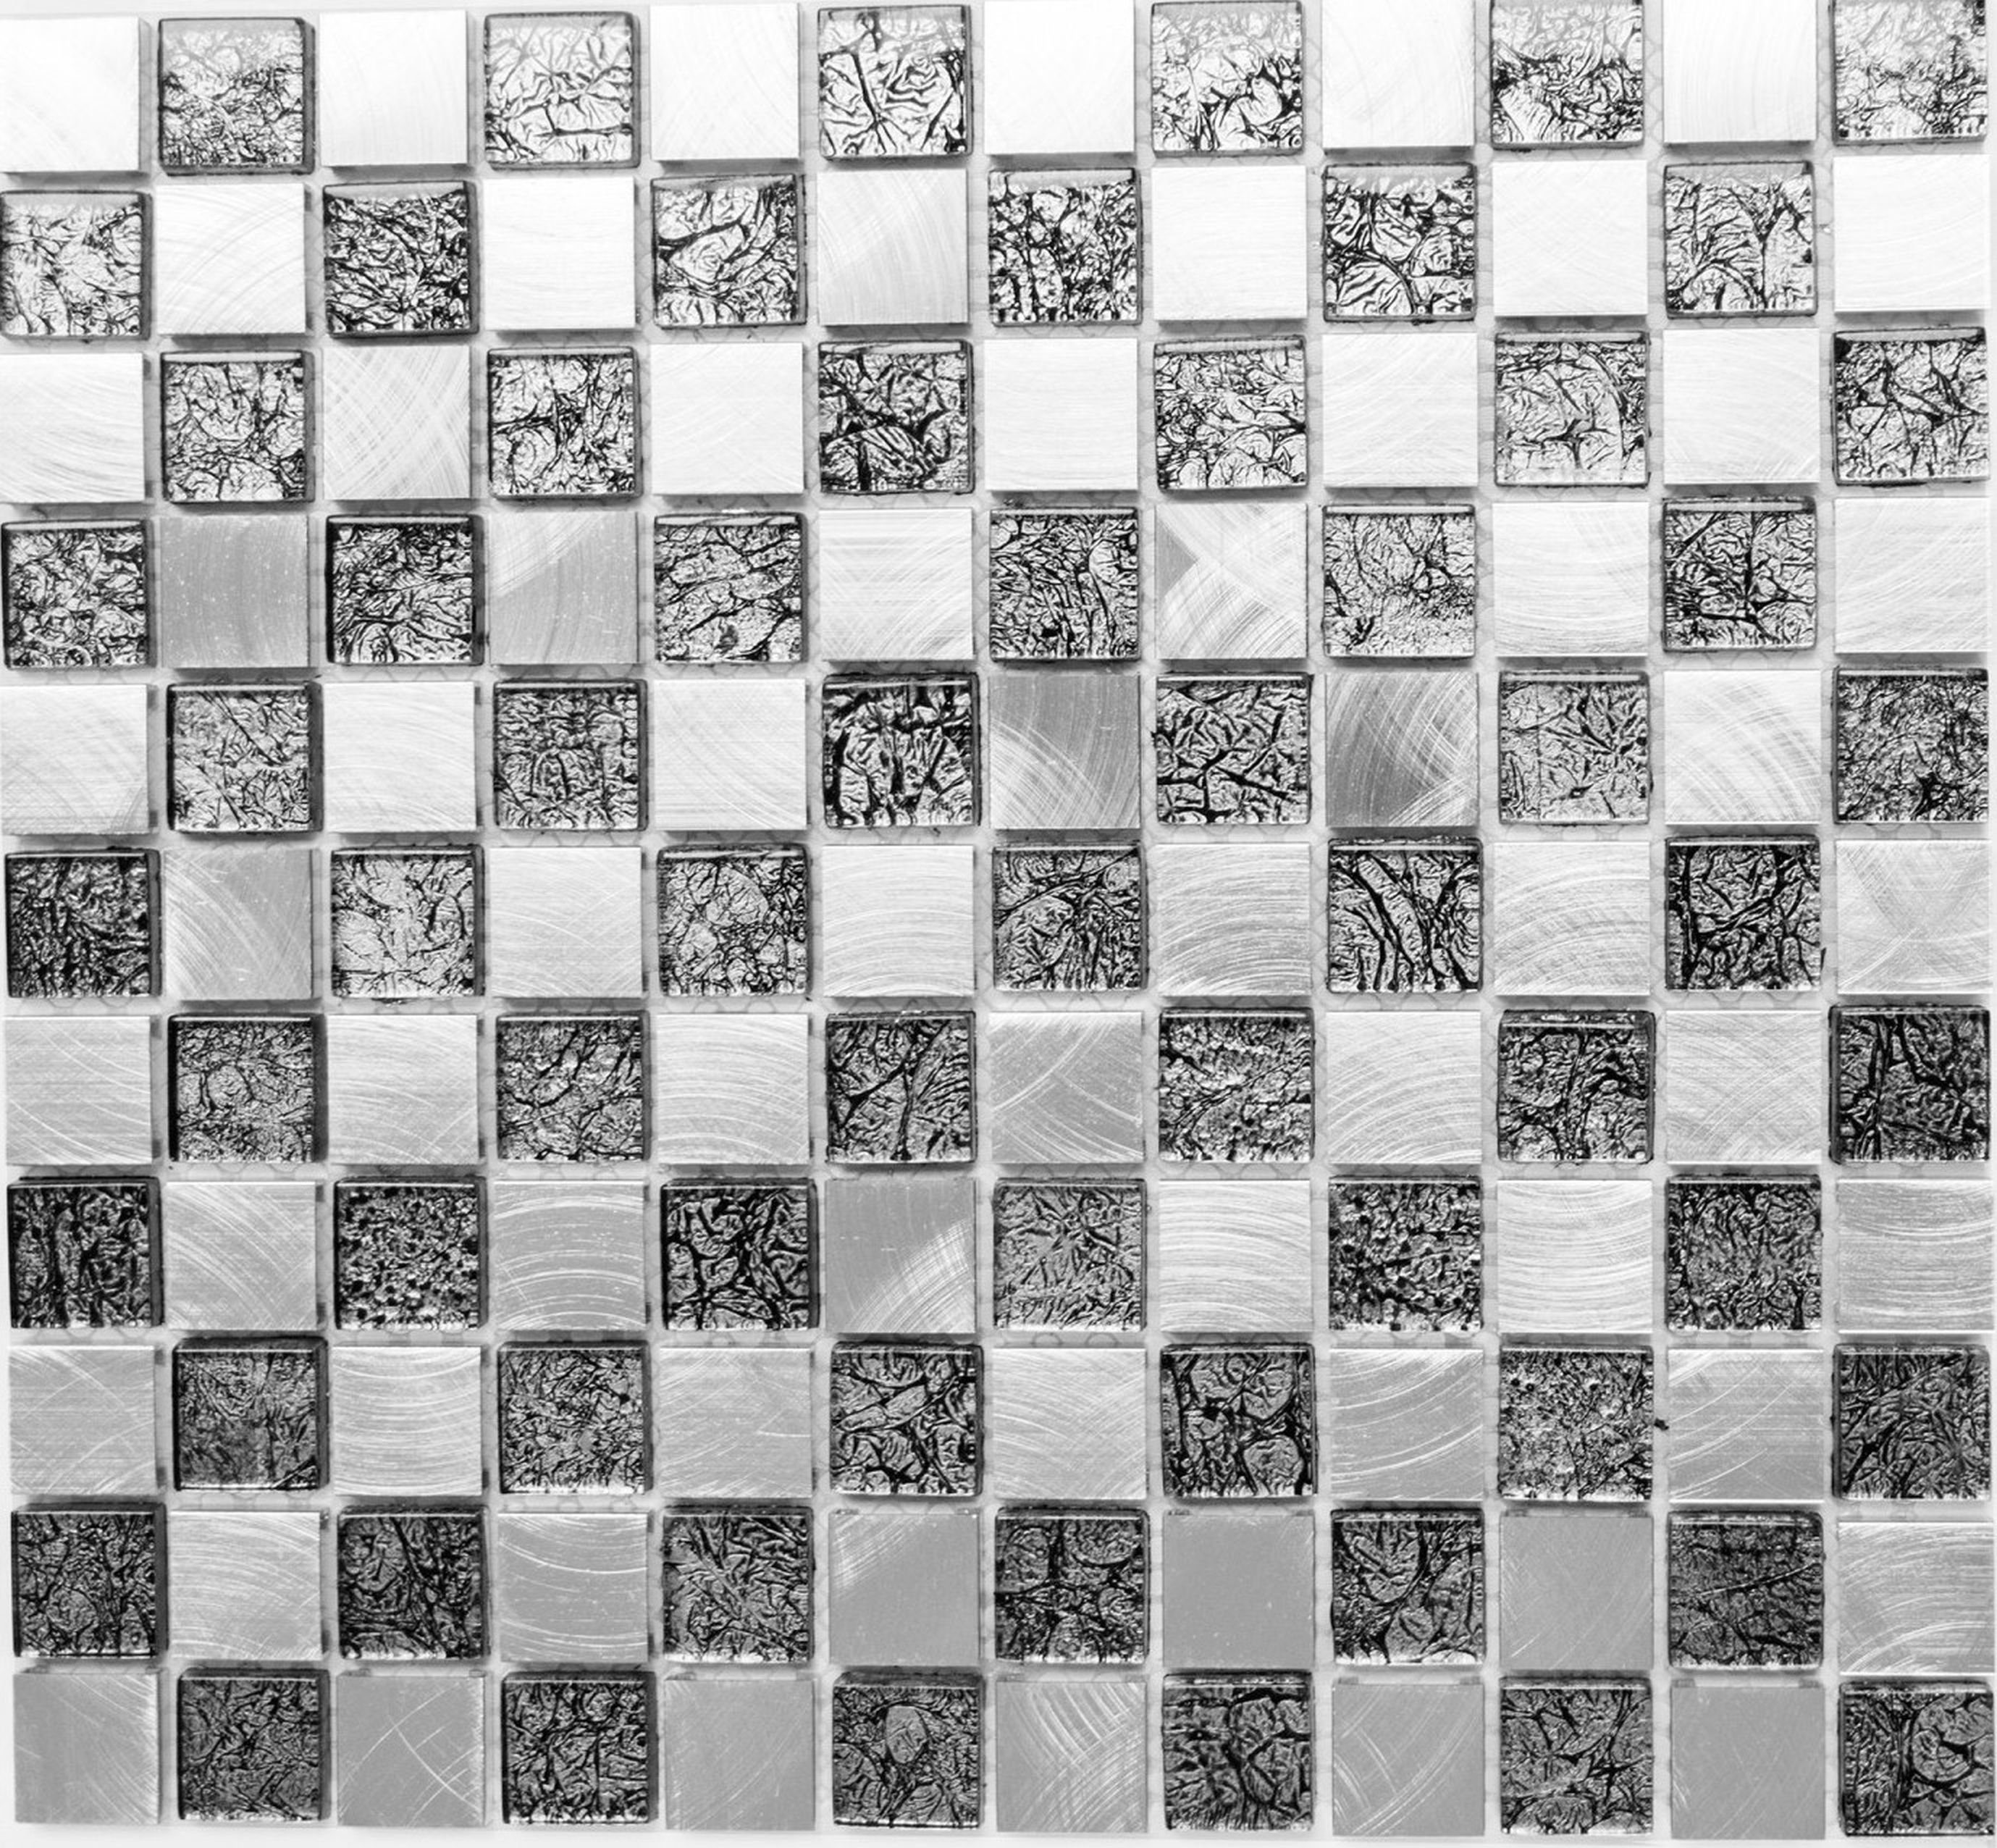 Mosani Mosaikfliesen Mosaik Fliese Aluminium Glasmosaik schwarz anthrazit silber